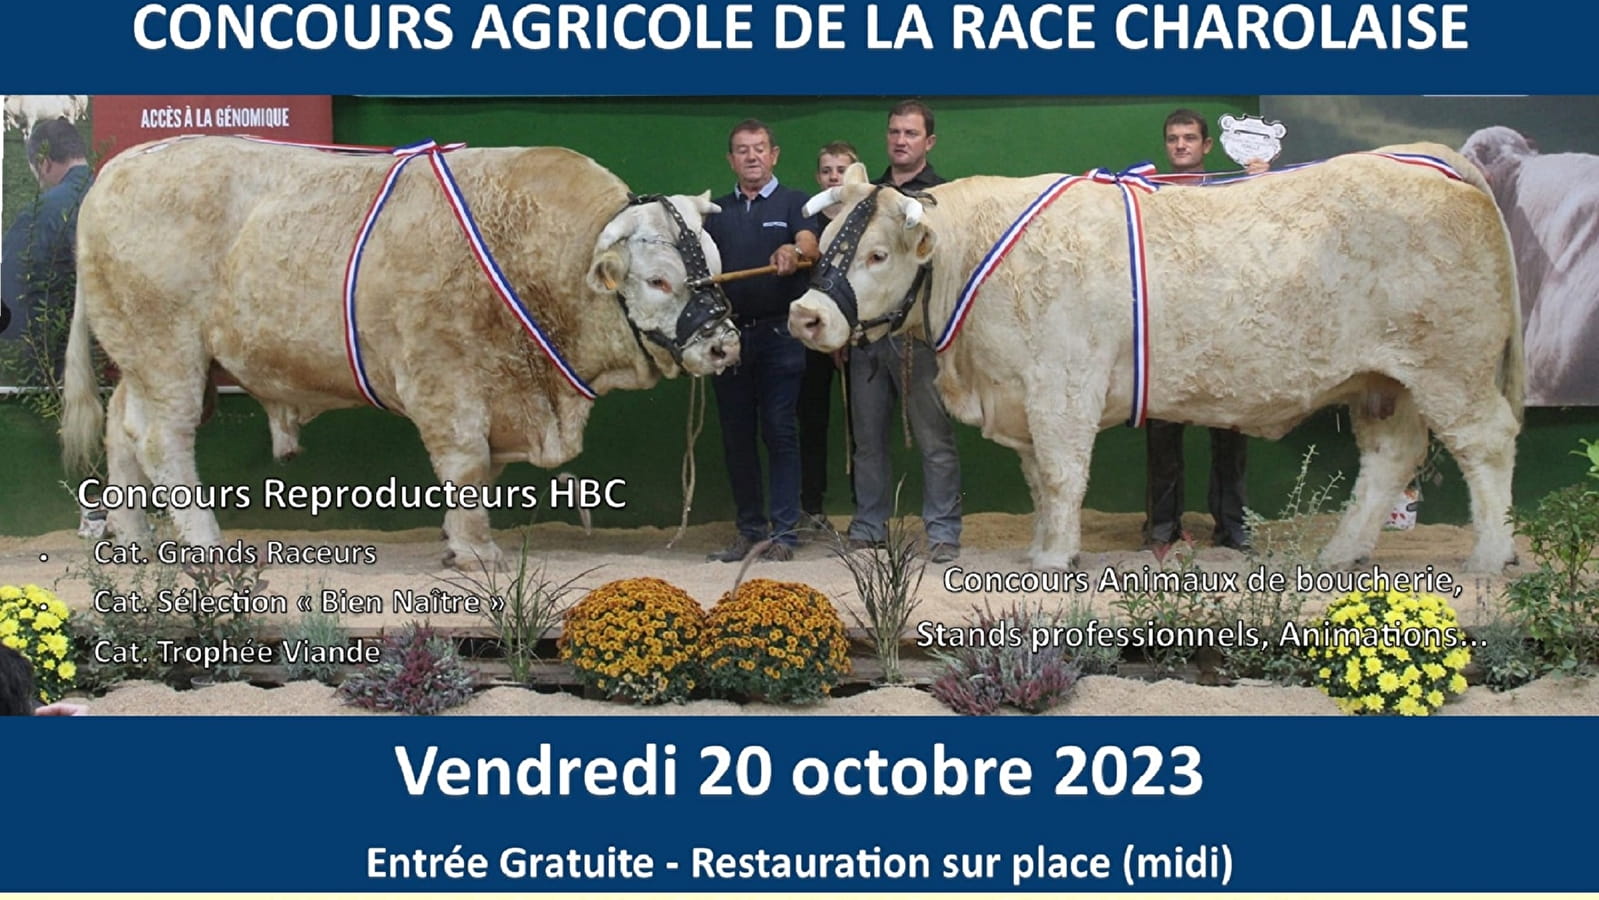 Landwirtschaftlicher Wettbewerb der Charolais-Rasse